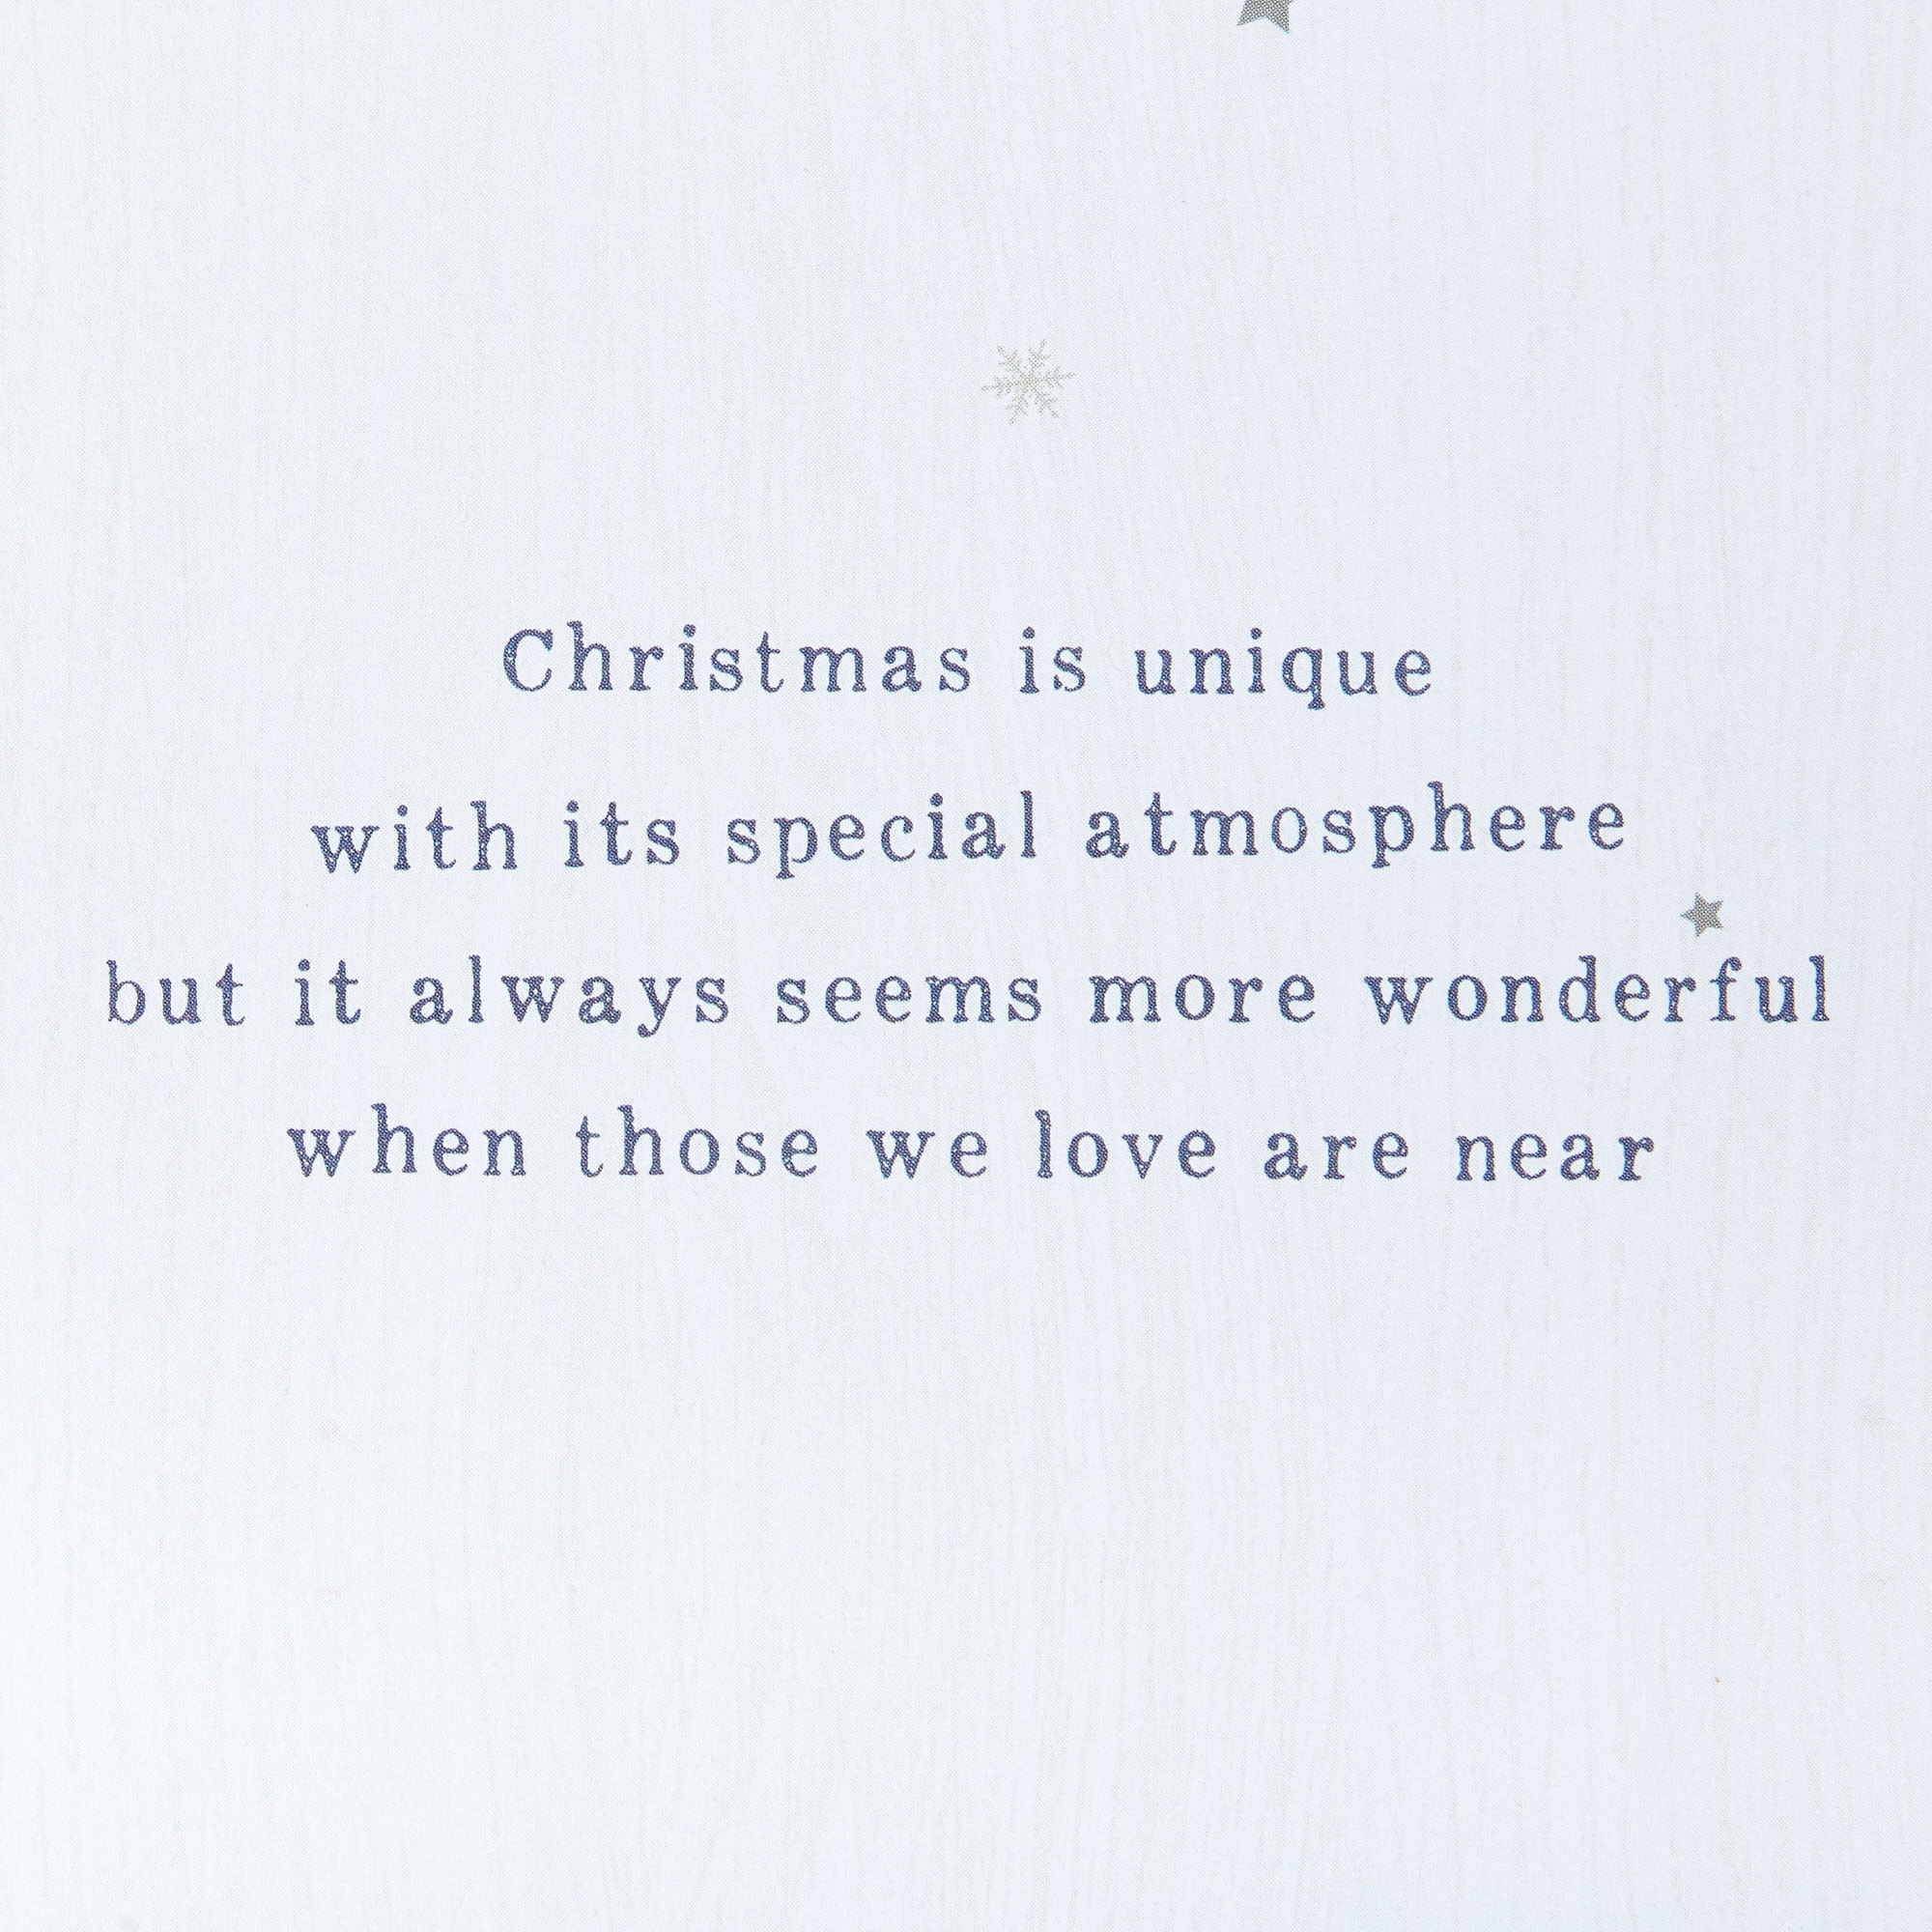 Christmas Card - To Both Of You, Christmas Street And Tree